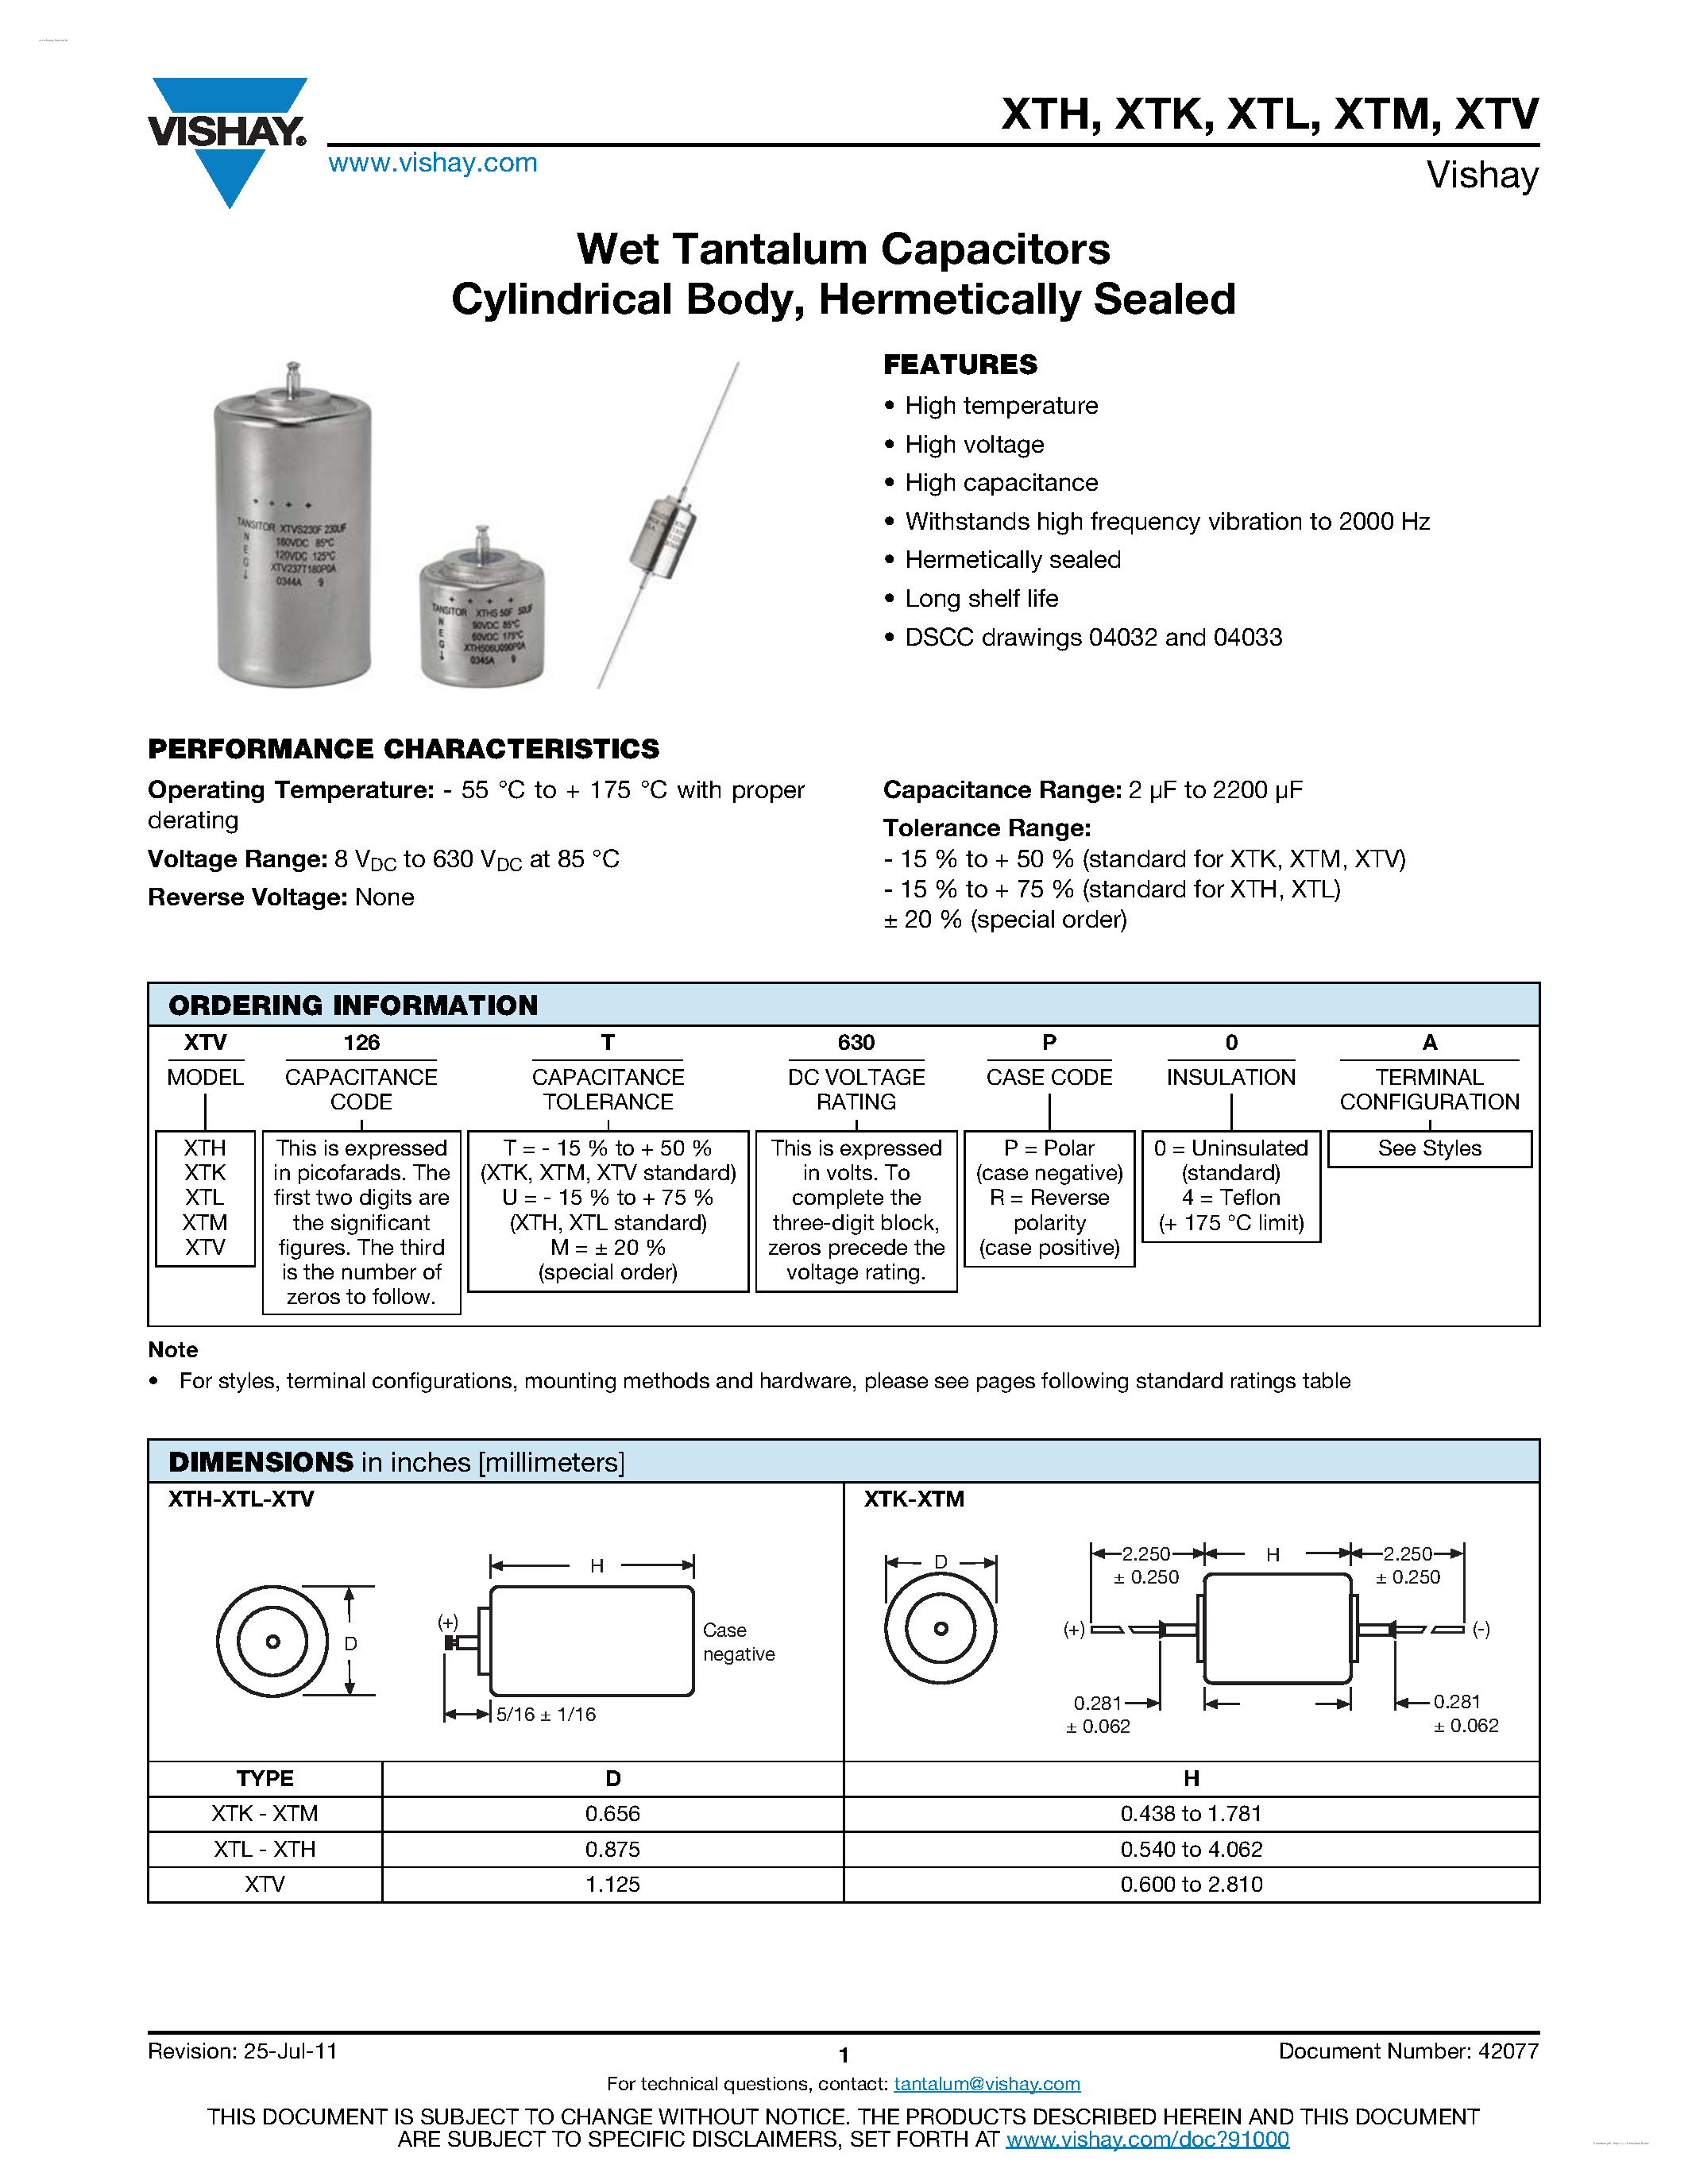 Datasheet XTM - Wet Tantalum Capacitors page 1